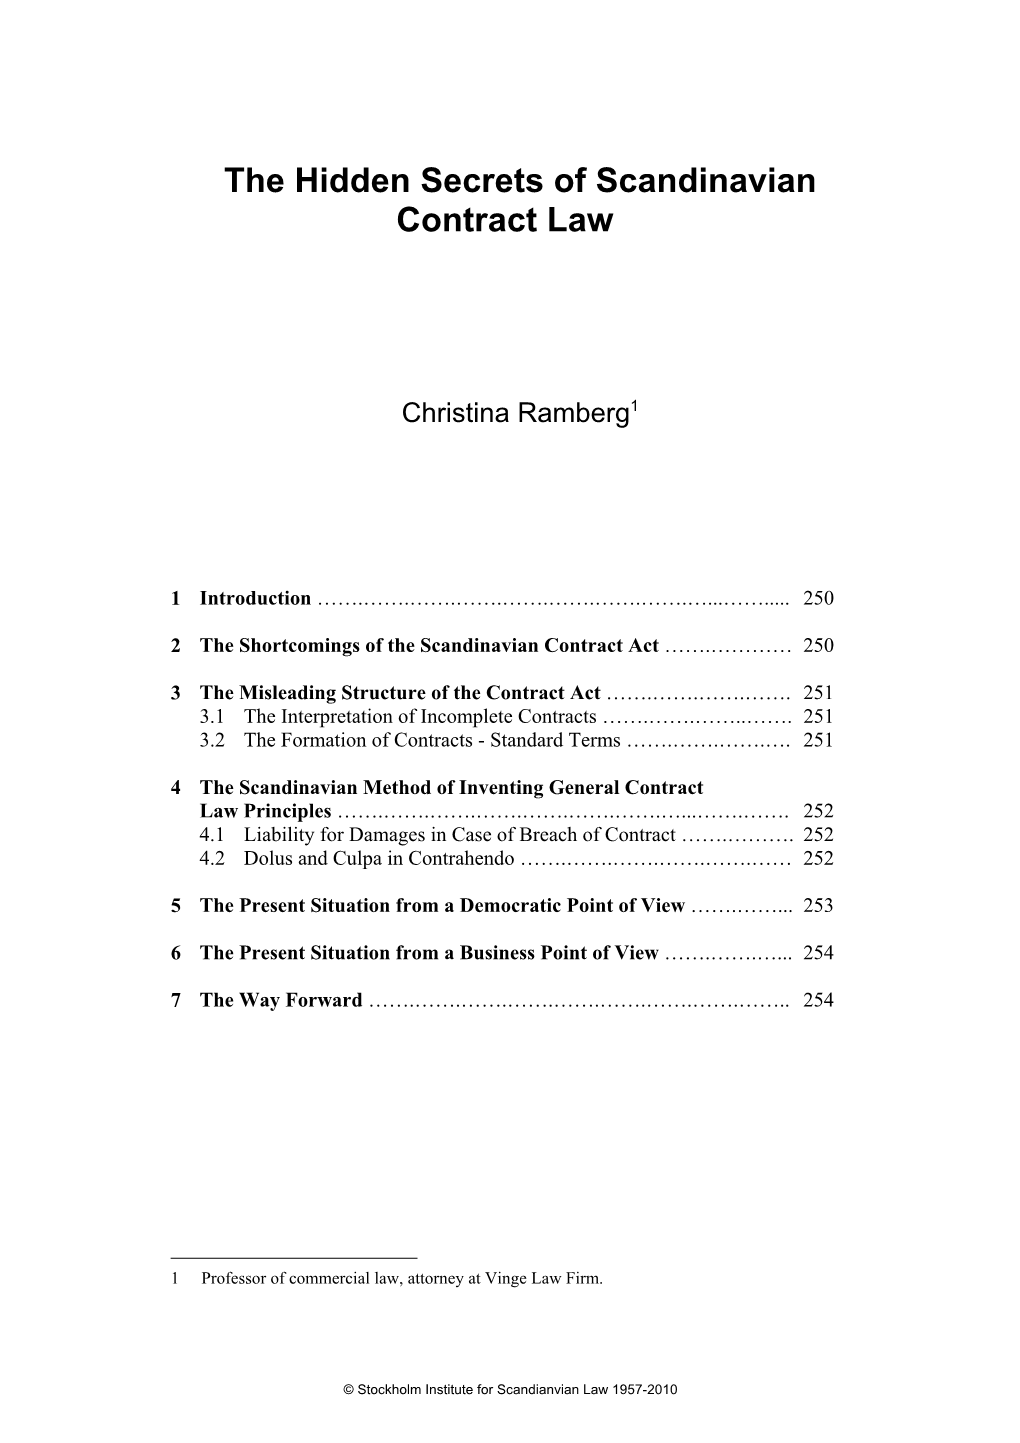 The Hidden Secrets of Scandinavian Contract Law